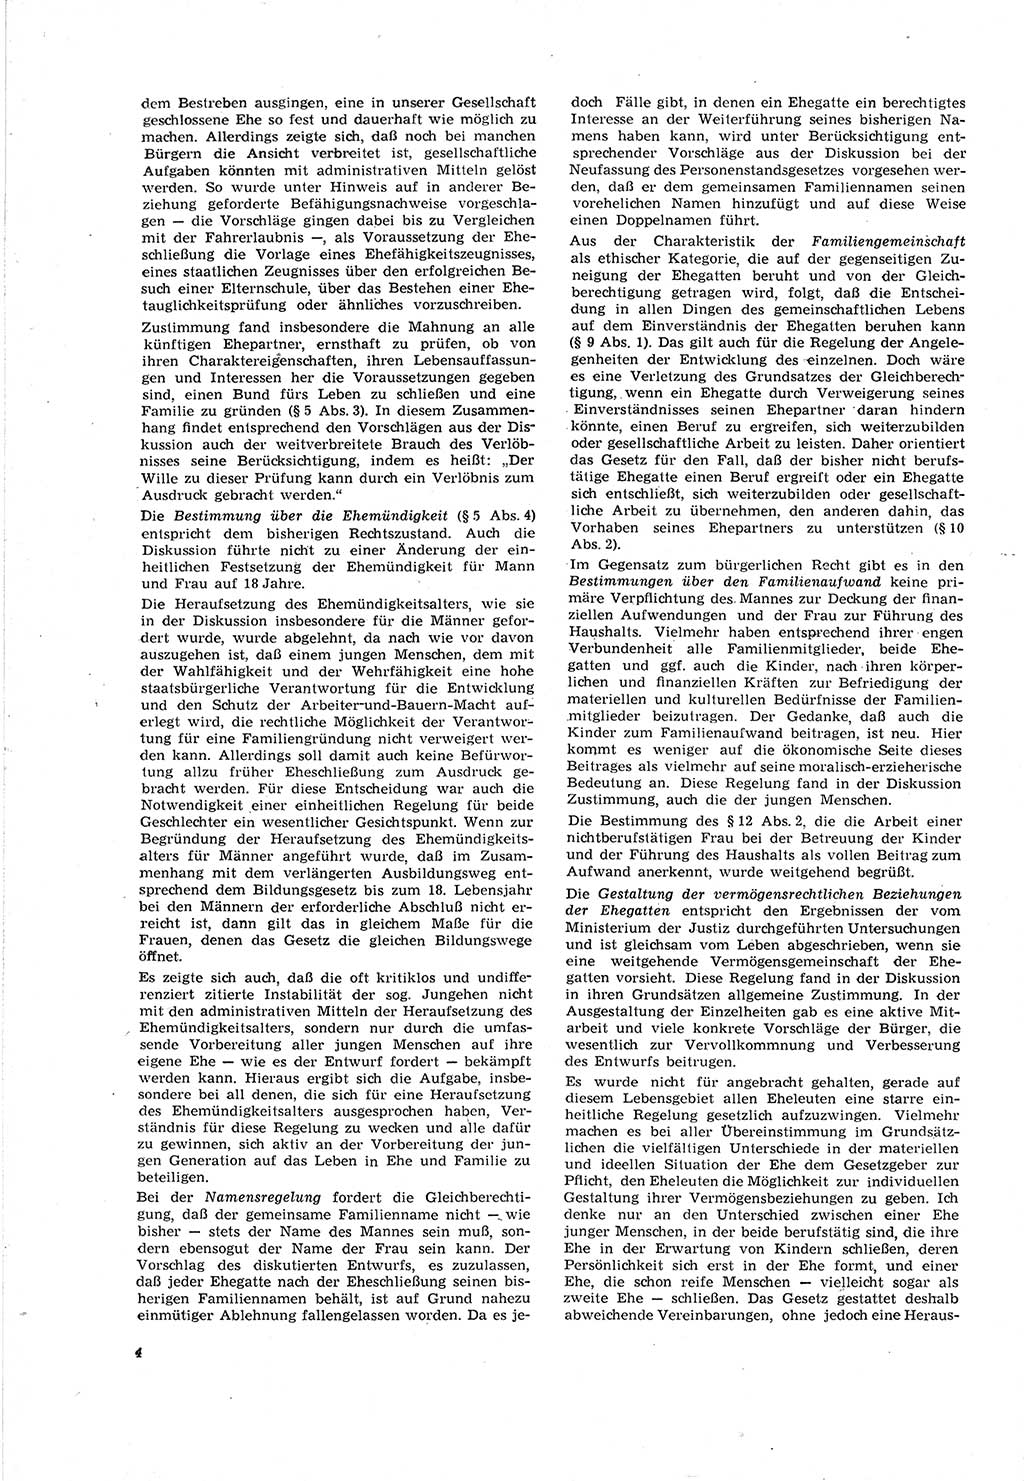 Neue Justiz (NJ), Zeitschrift für Recht und Rechtswissenschaft [Deutsche Demokratische Republik (DDR)], 20. Jahrgang 1966, Seite 4 (NJ DDR 1966, S. 4)